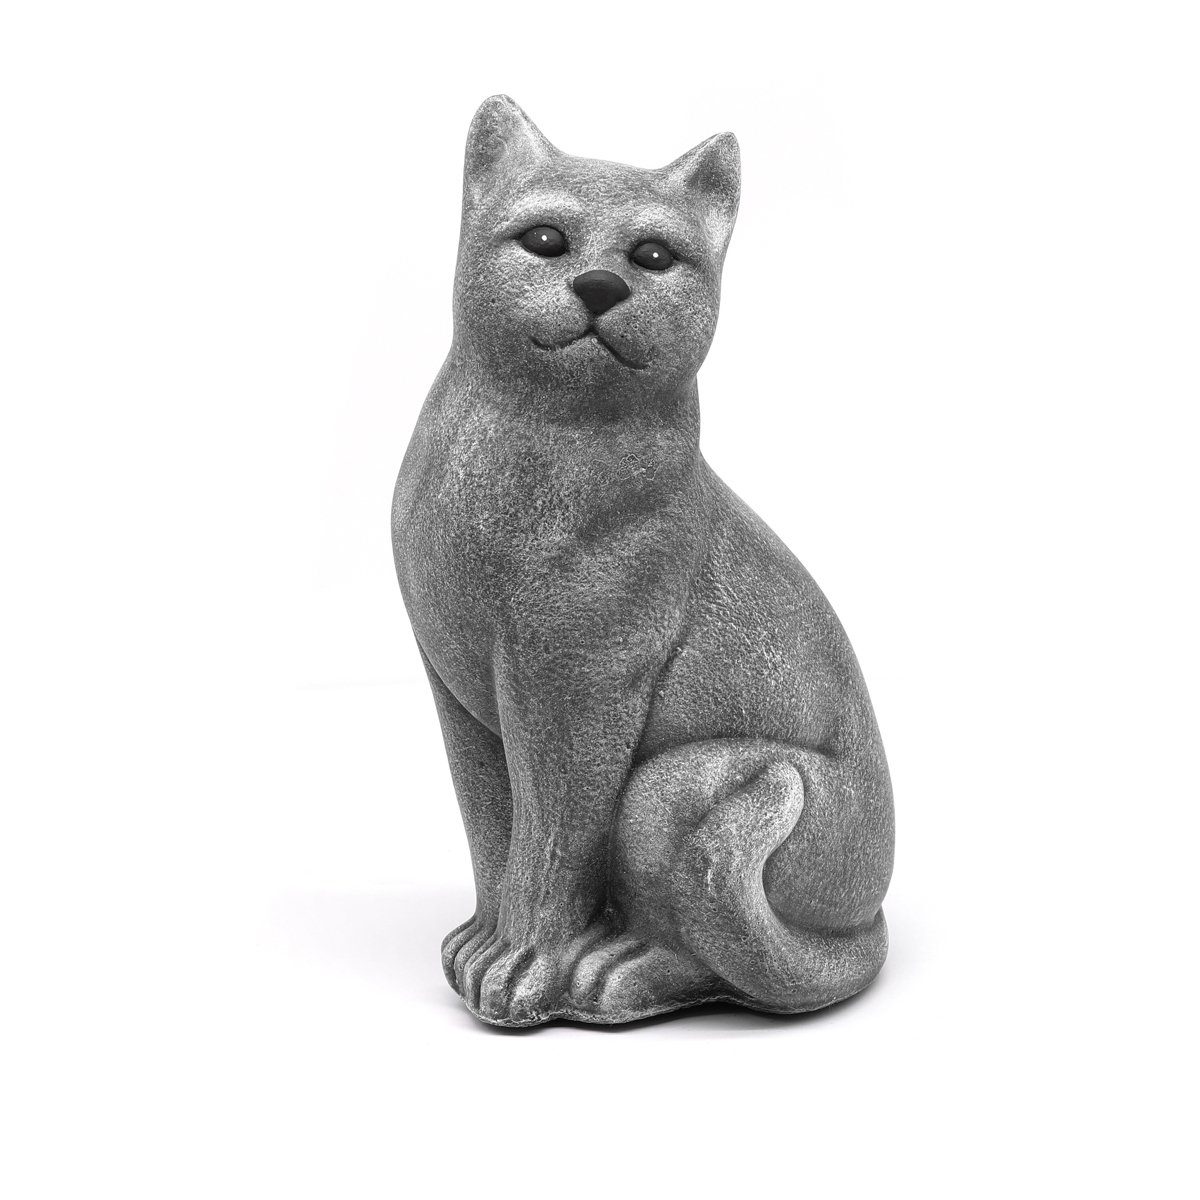 Tiefes Kunsthandwerk Tierfigur Dekofigur Katze sitzend - Steinfigur für Haus und Garten, frostsicher, winterfest, Made in Germany grau